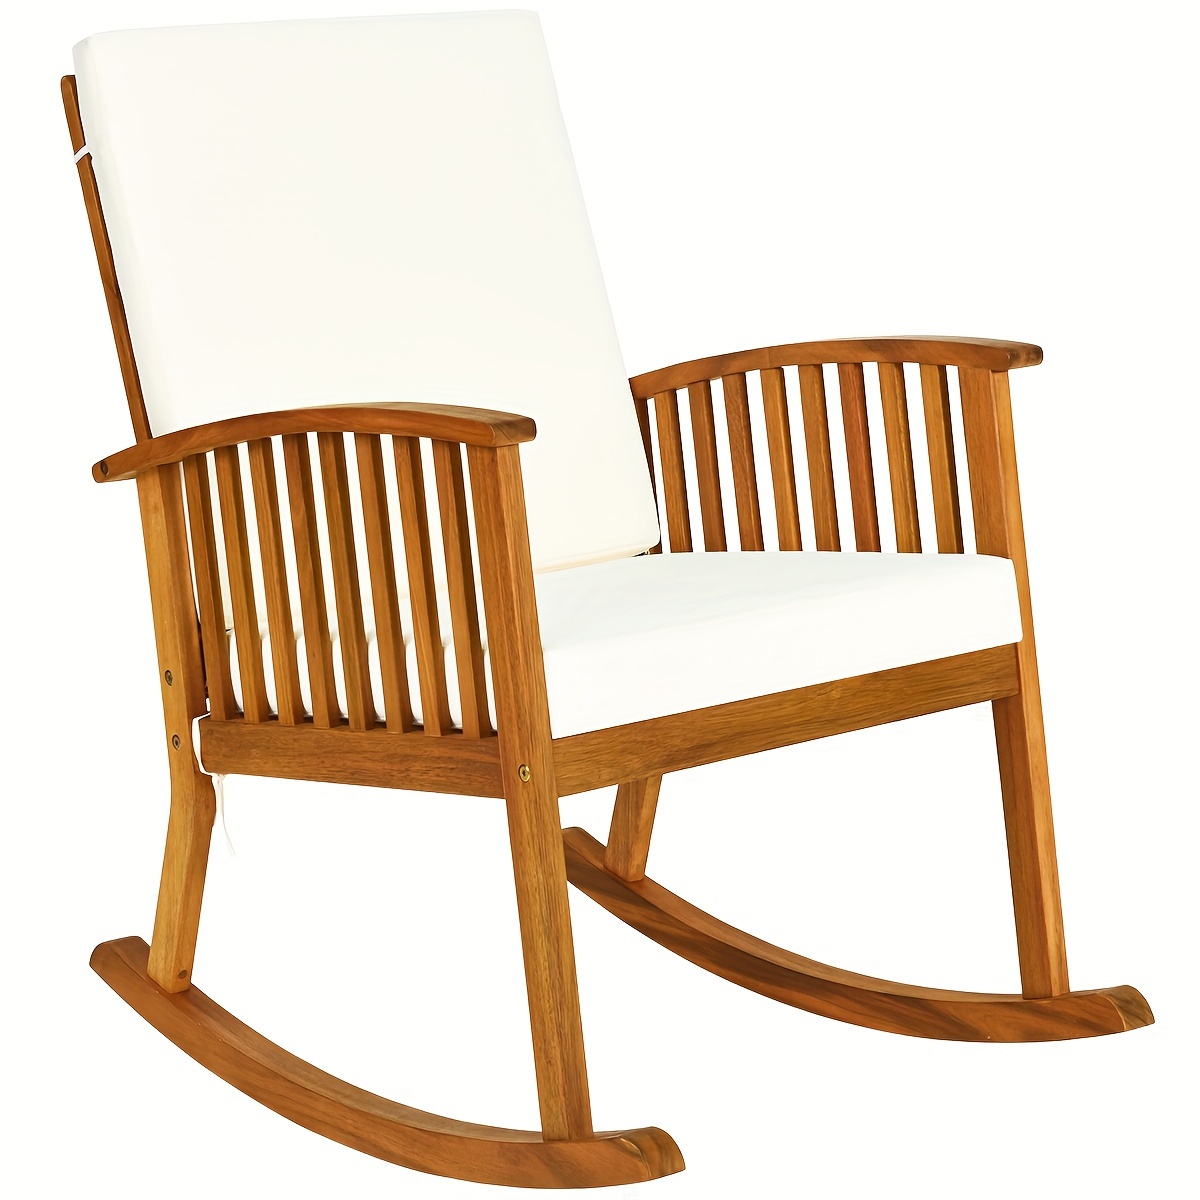 

1pc Outdoor Acacia Wood Rocking Chair, Patio Backyard Garden Lawn W/ Cushion